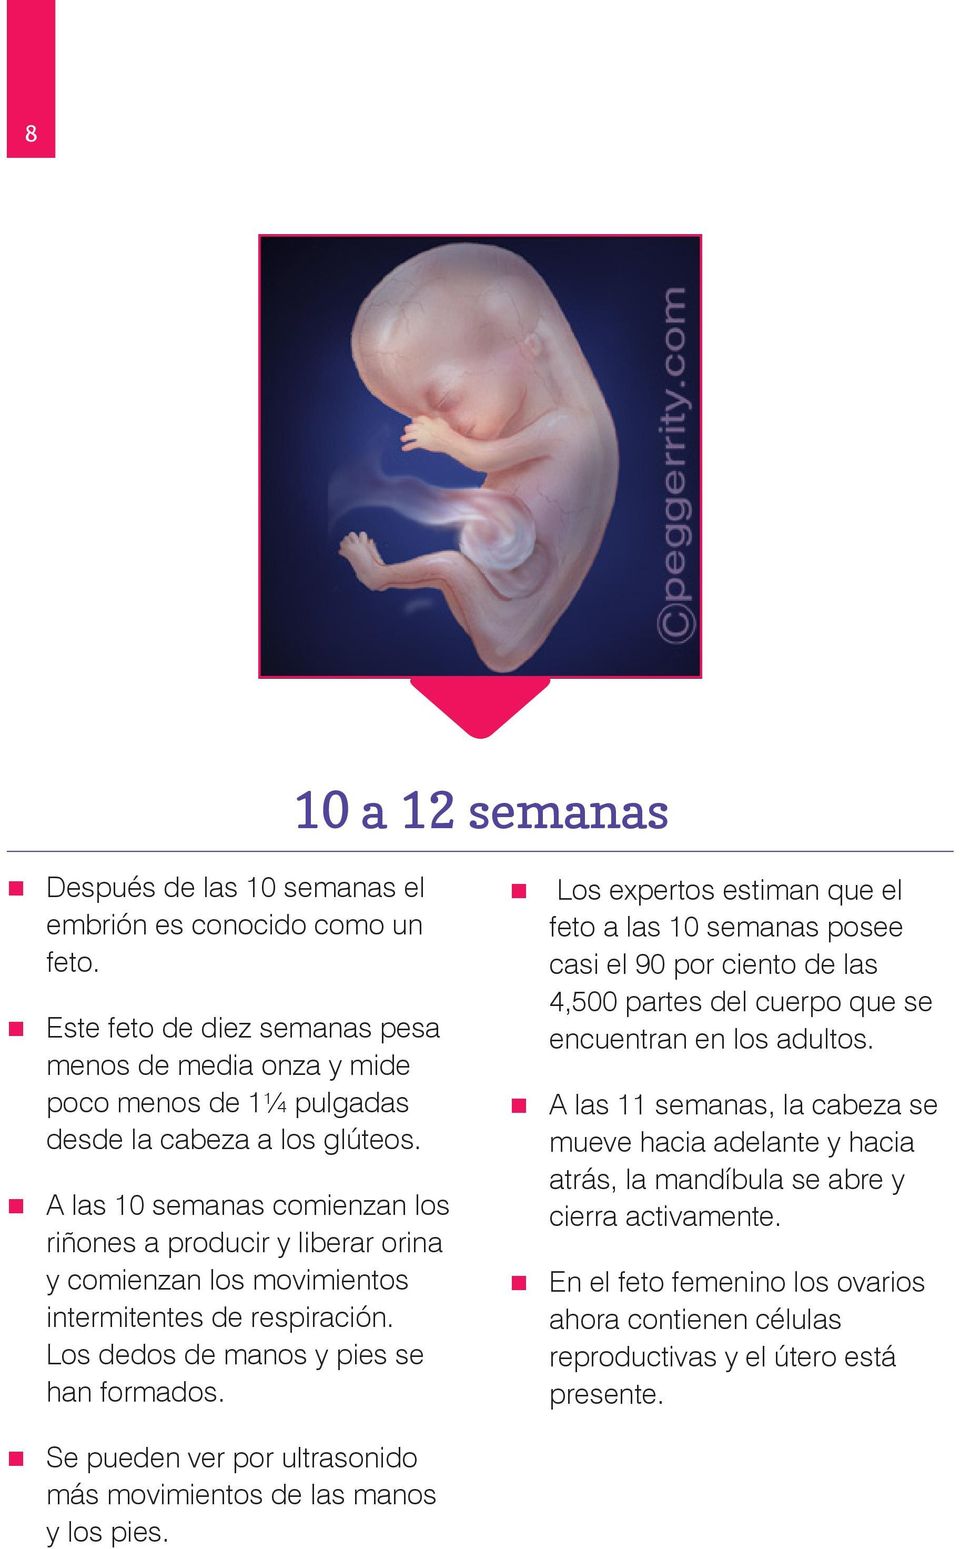 Los expertos estiman que el feto a las 10 semanas posee casi el 90 por ciento de las 4,500 partes del cuerpo que se encuentran en los adultos.